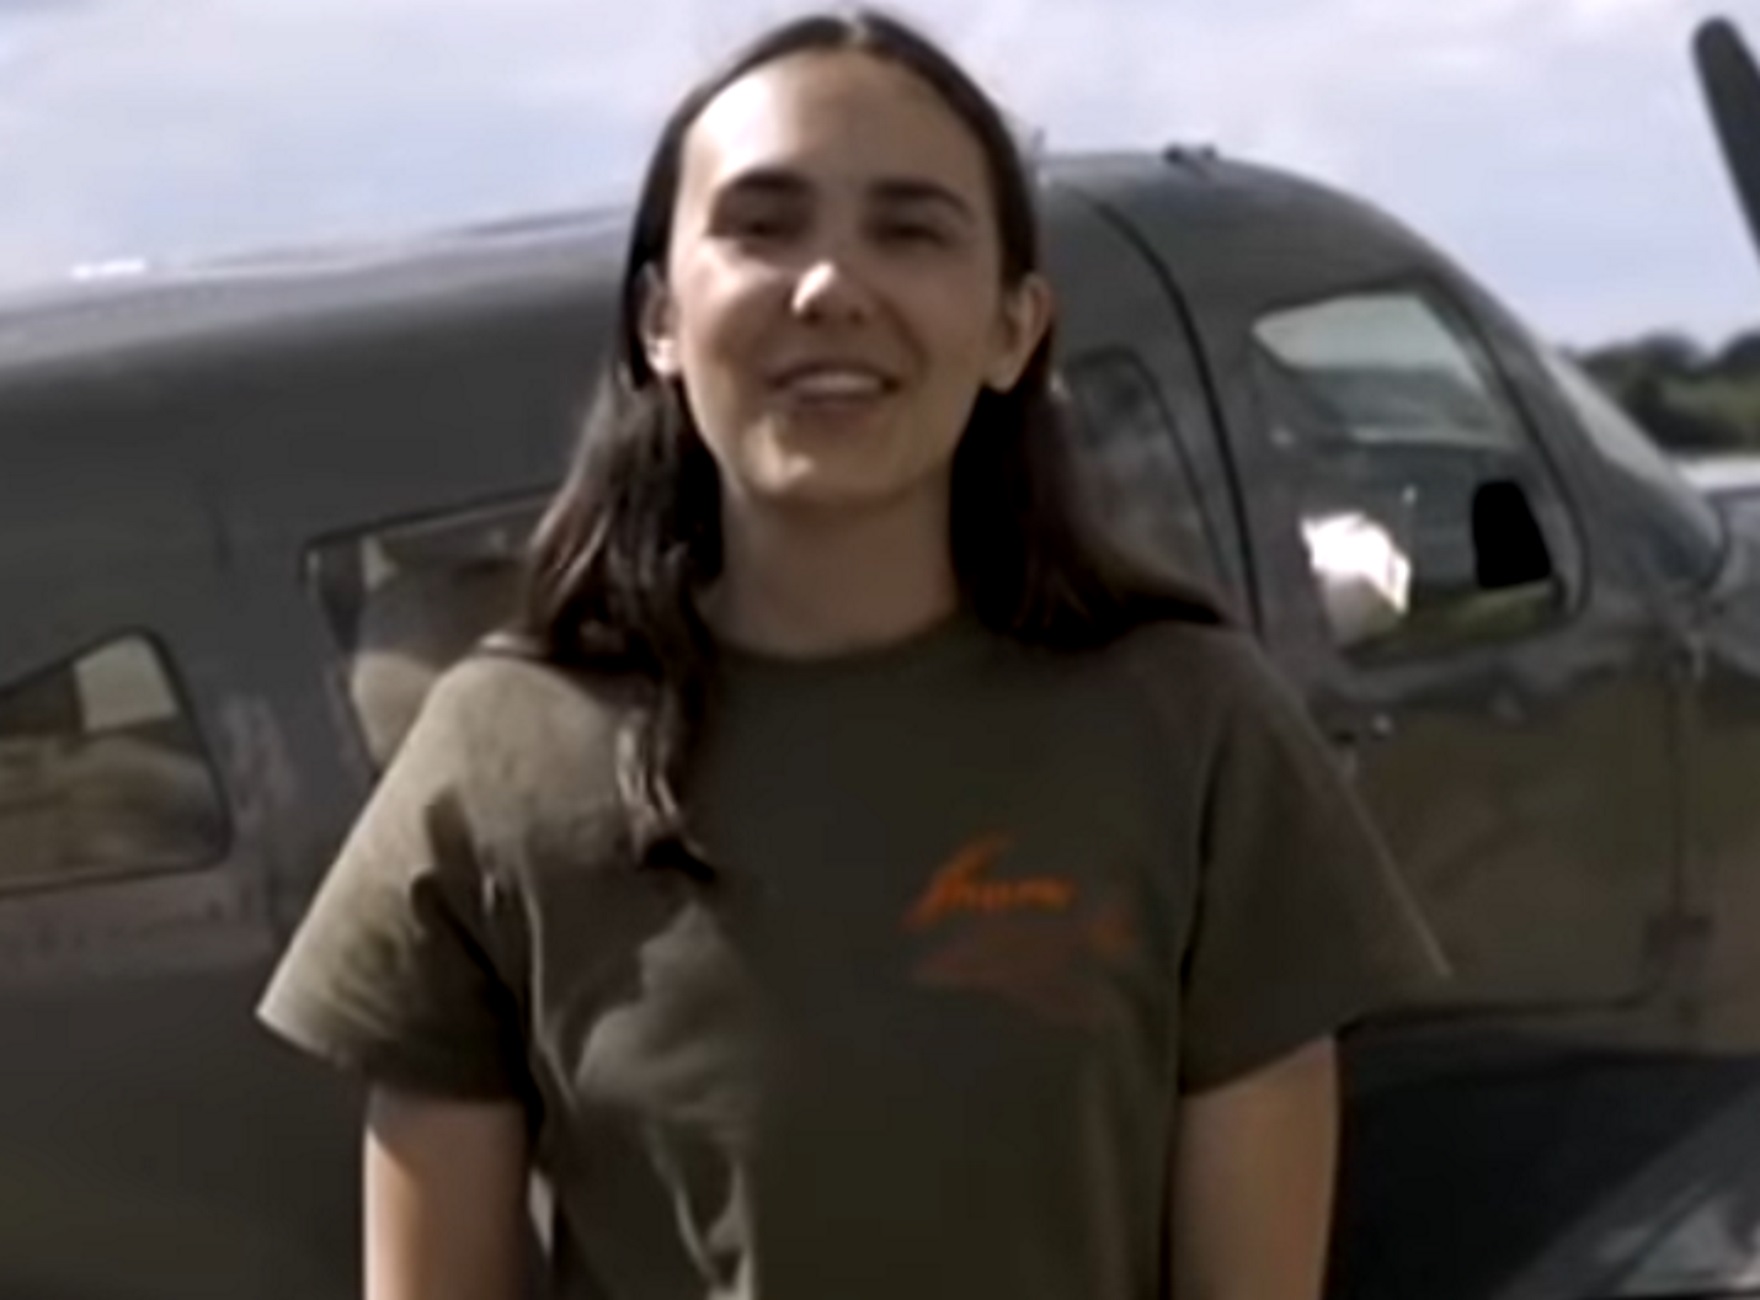 Ηράκλειο: Αυτή είναι η 19χρονη που προσπαθεί να κάνει το γύρο του κόσμου με μονοκινητήριο αεροσκάφος